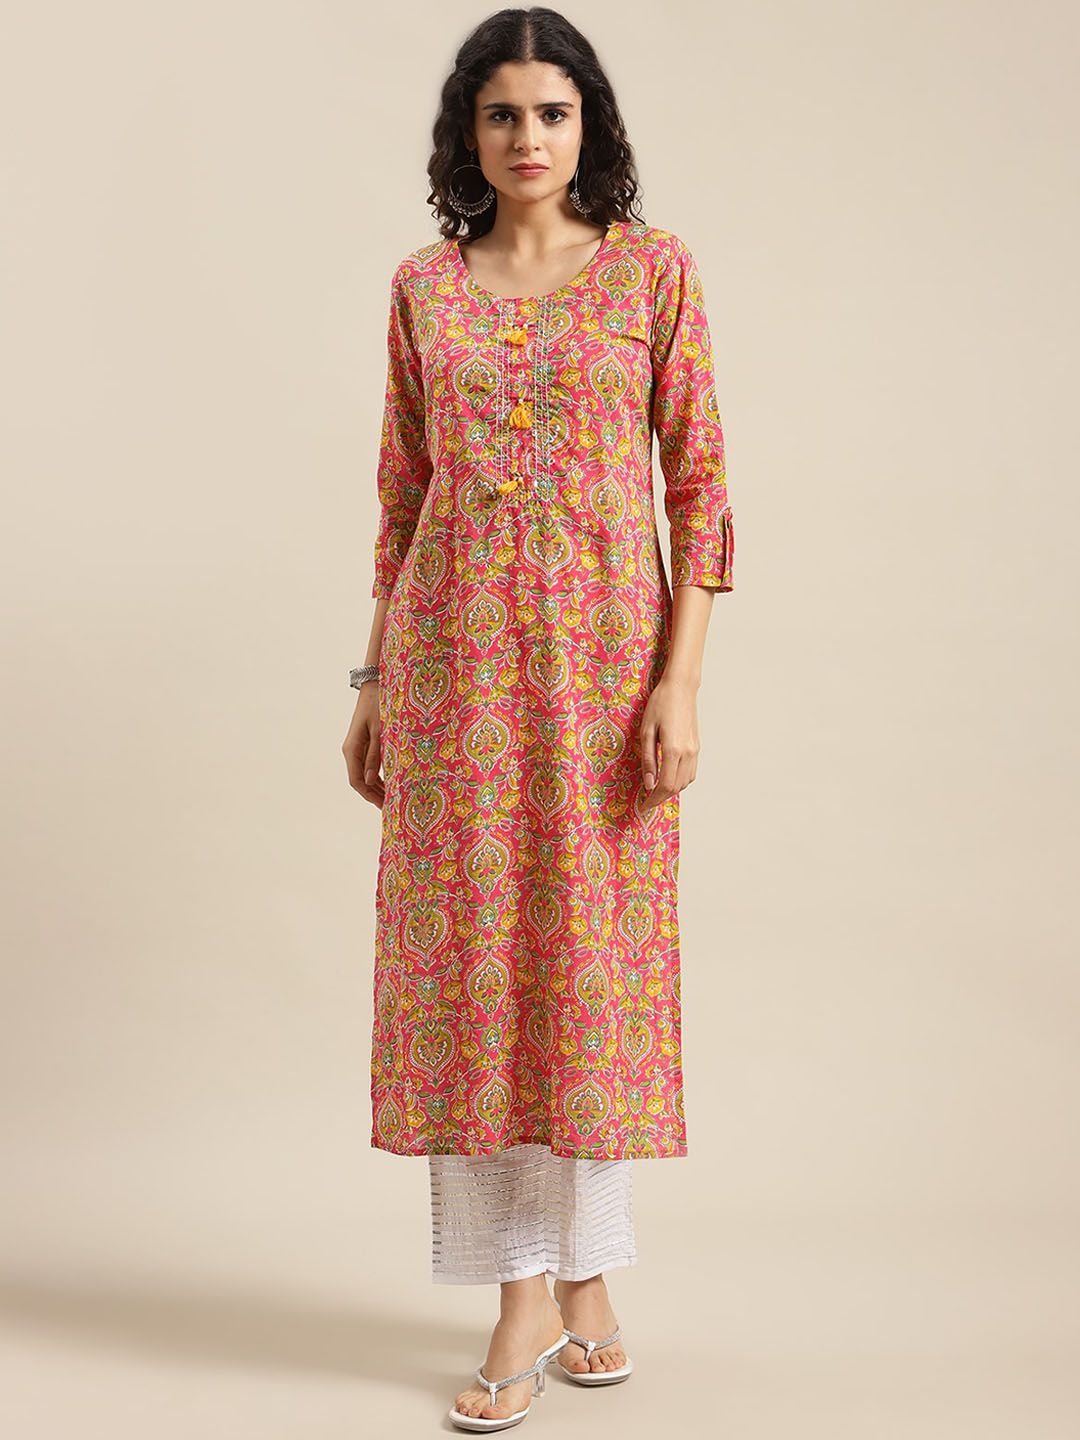 Varanga Women Pink Ethnic Motifs Printed Cotton Kurta Price in India